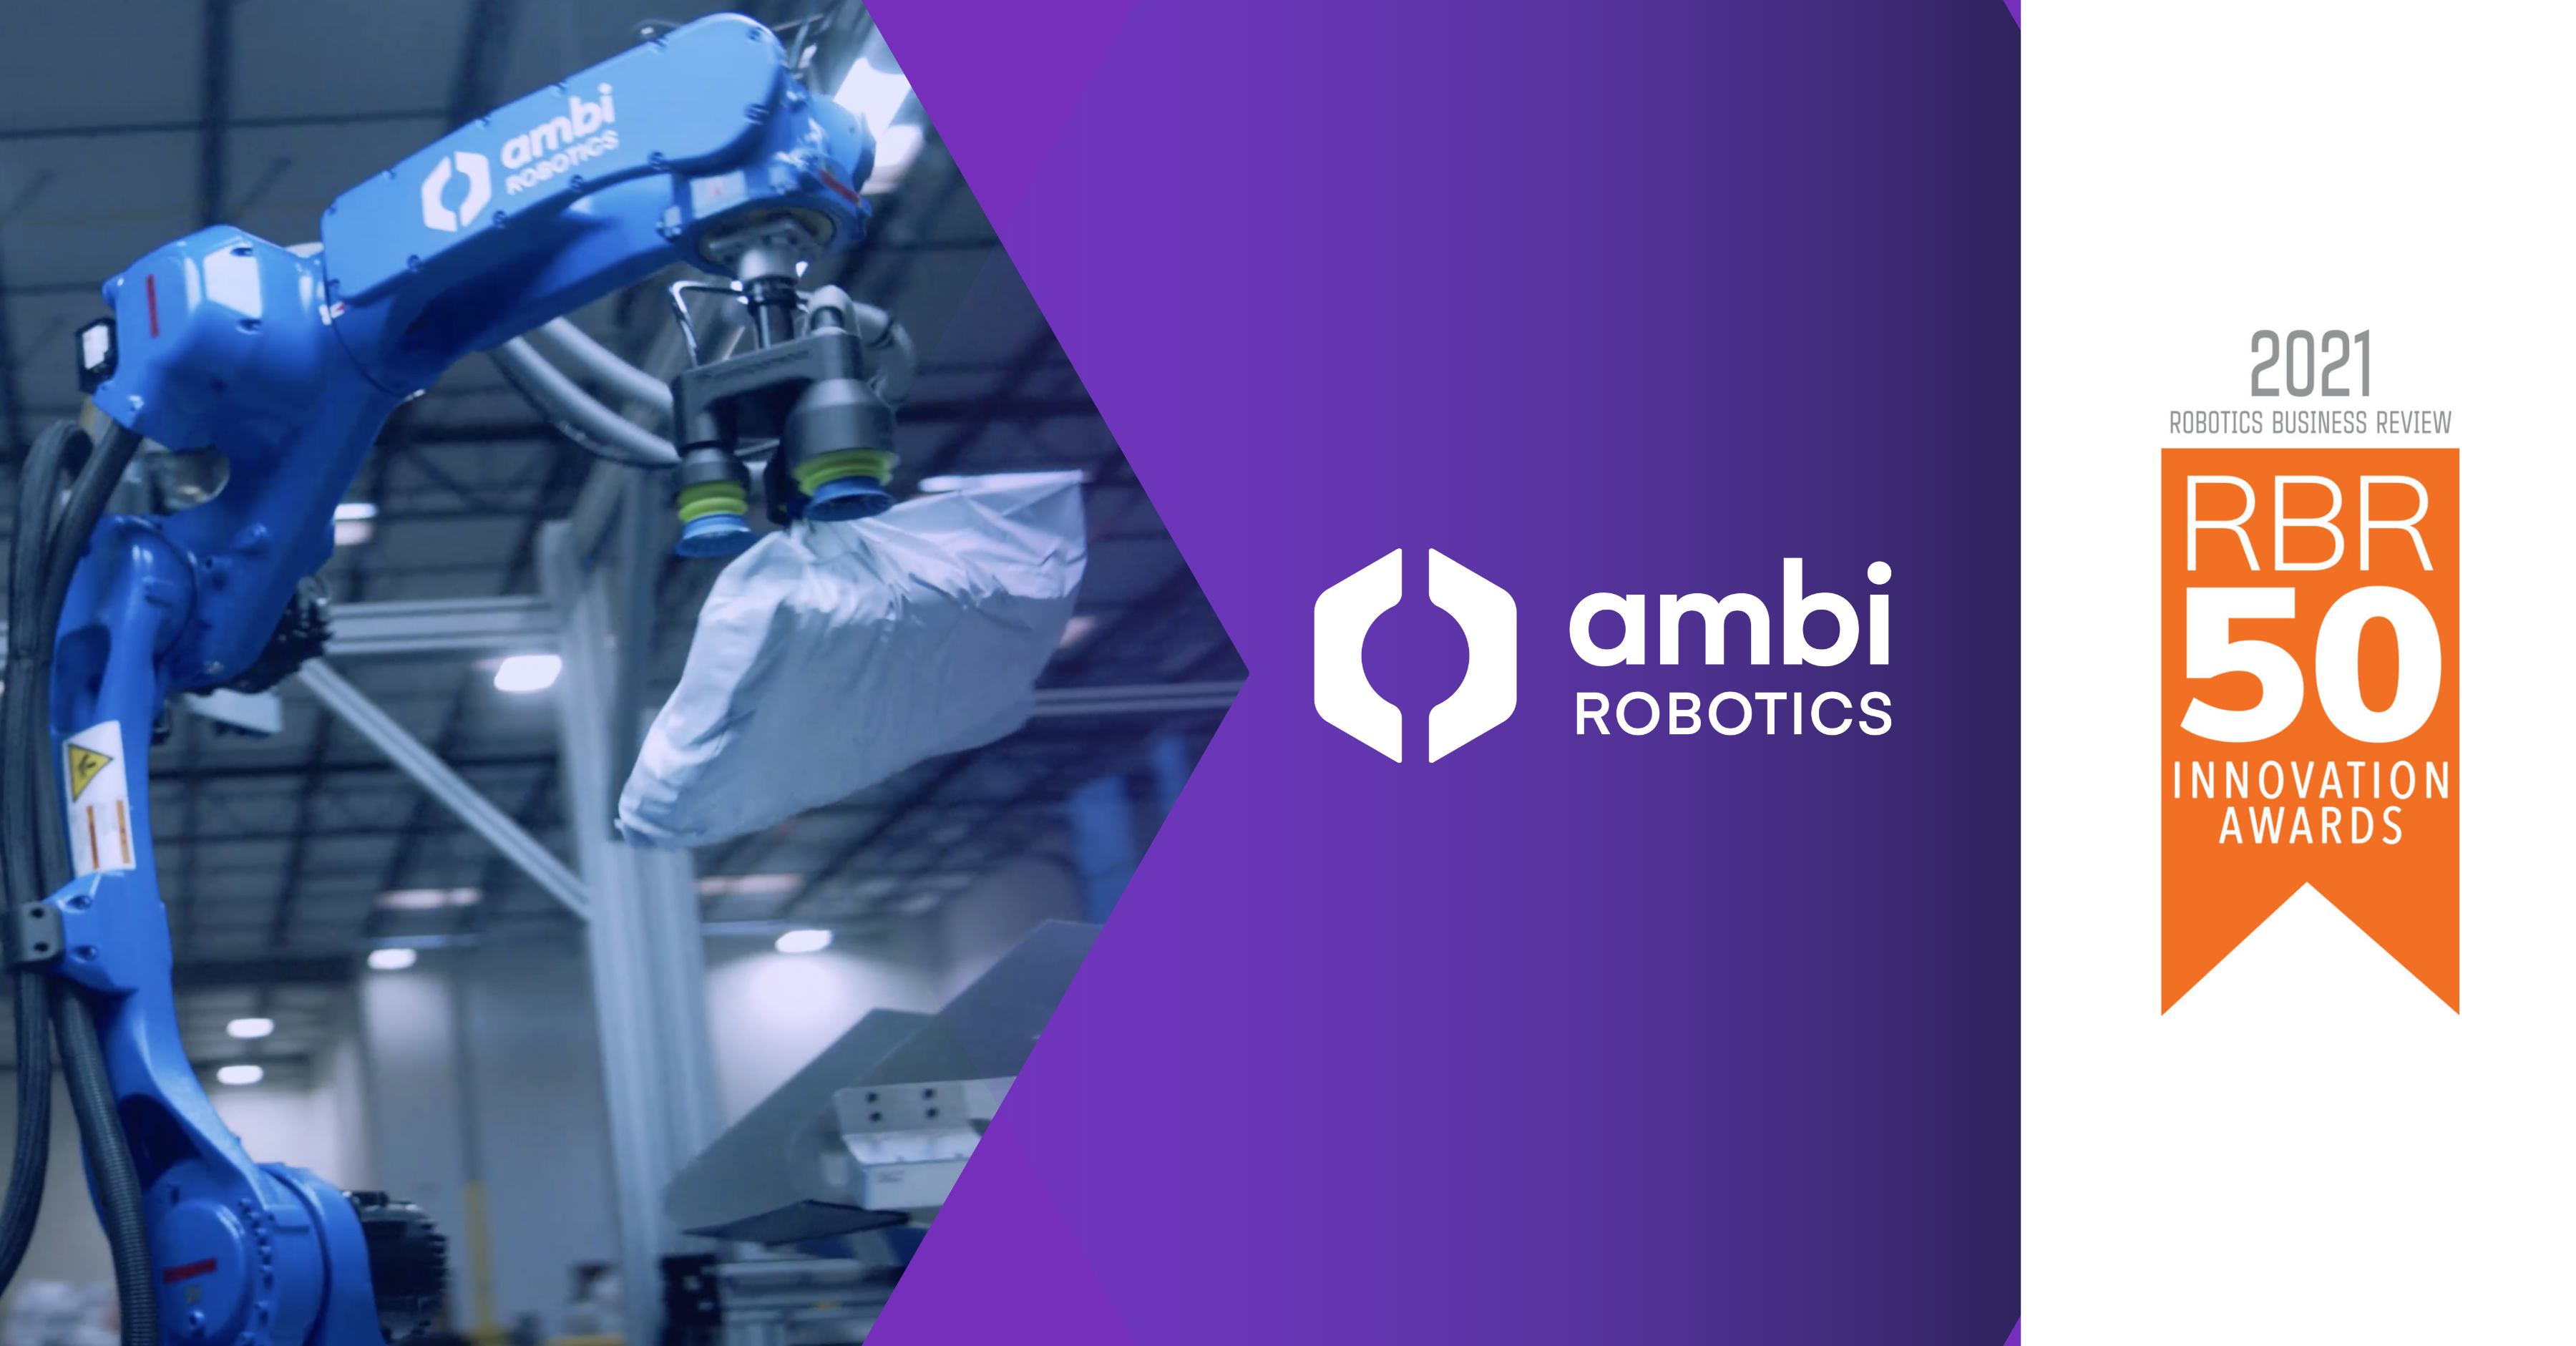 RBR50 Innovation Award, Ambi Robotics